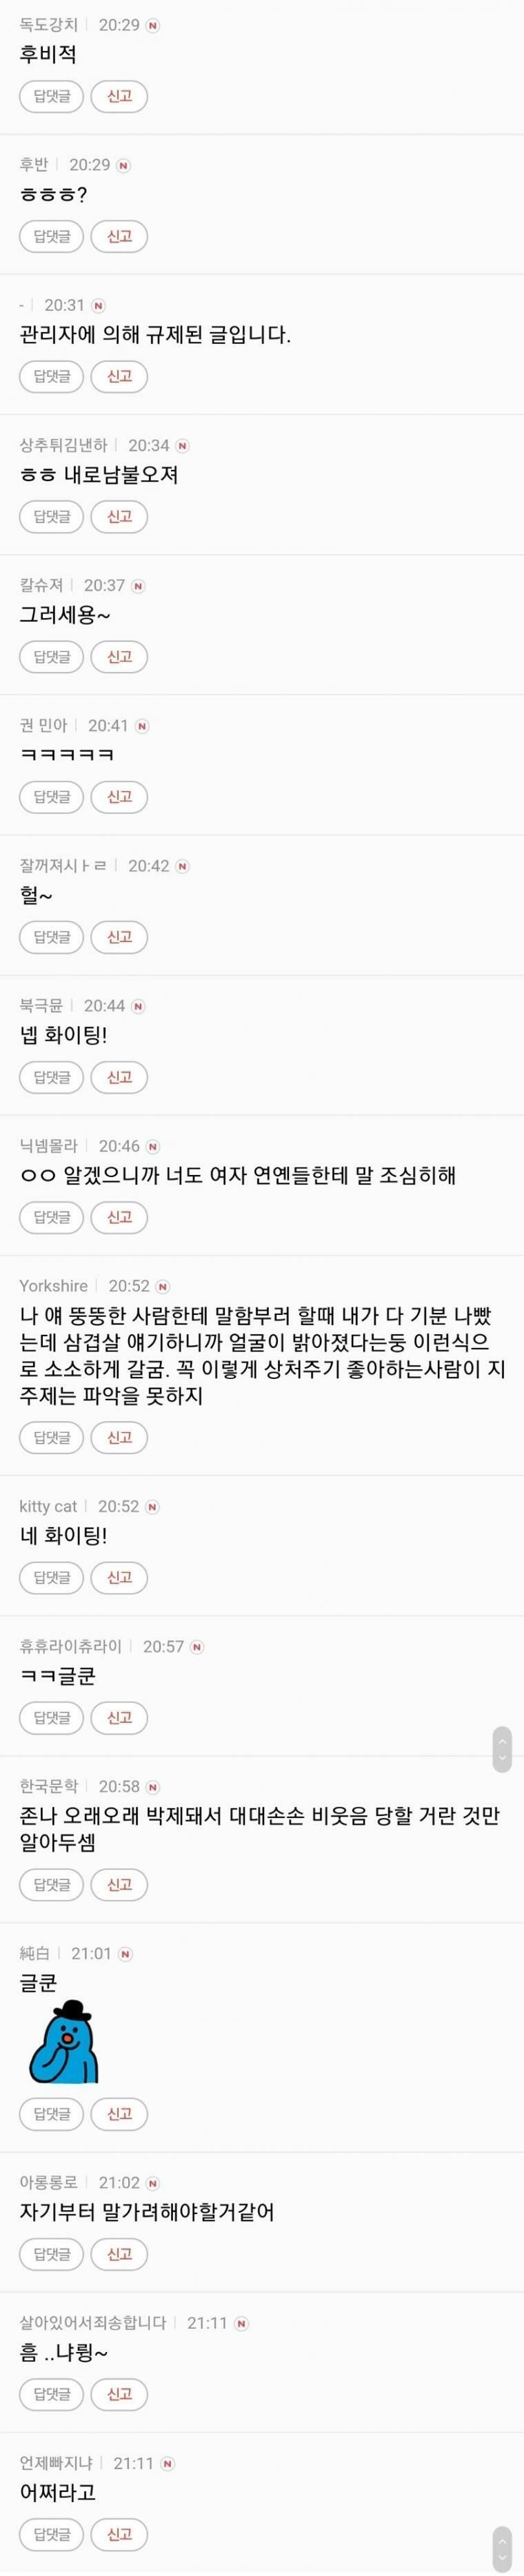 [유머] 김희철 고소에 언냐들 반응 -  와이드섬